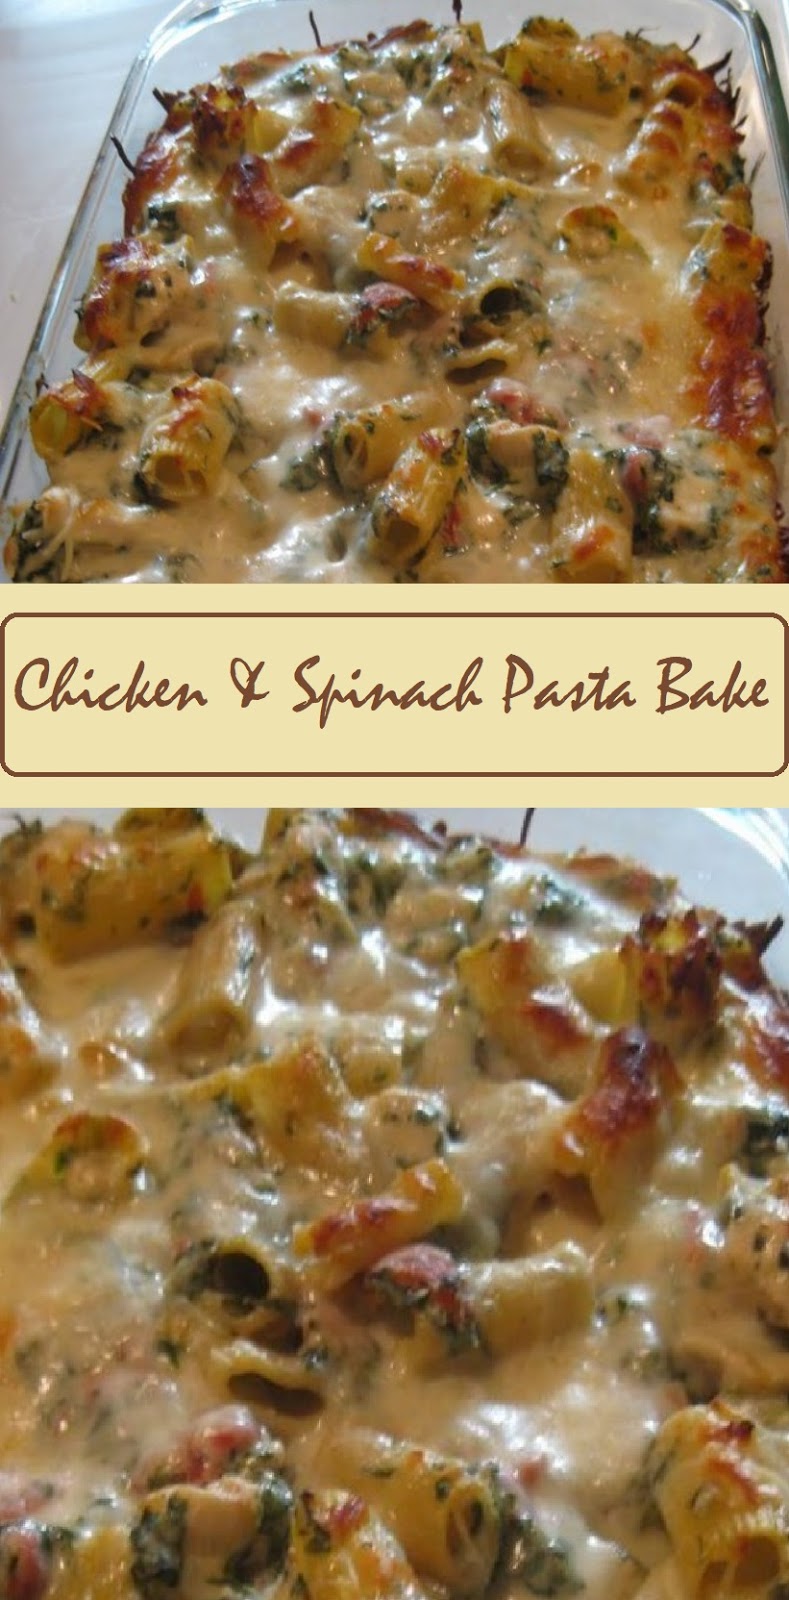 Chicken & Spinach Pasta Bake